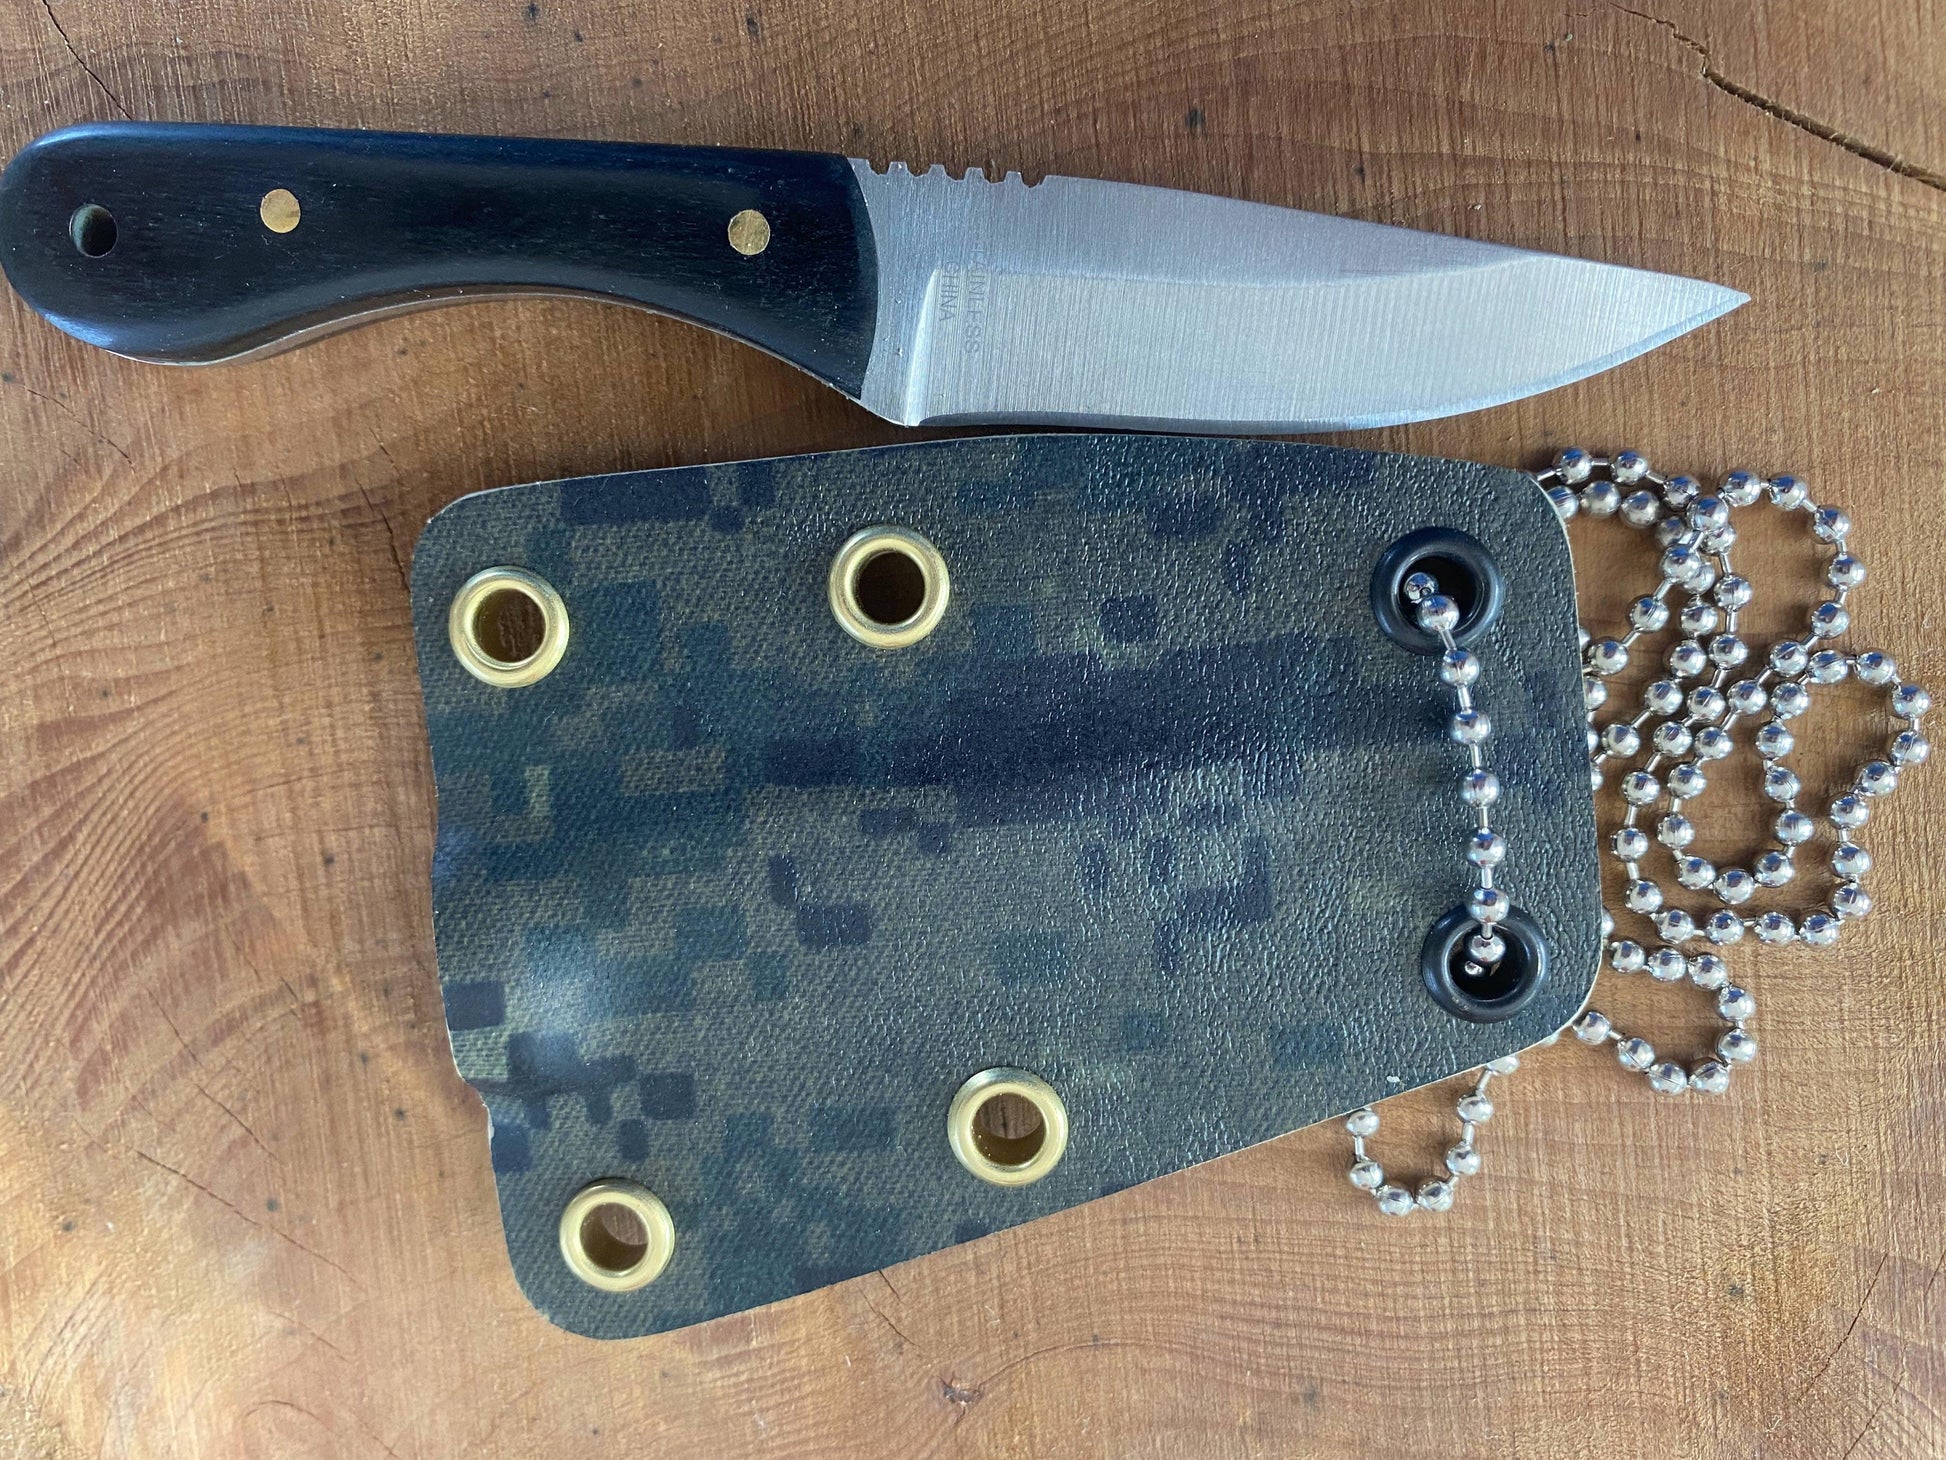 Regular blade Camp Knife - Crowes Knives